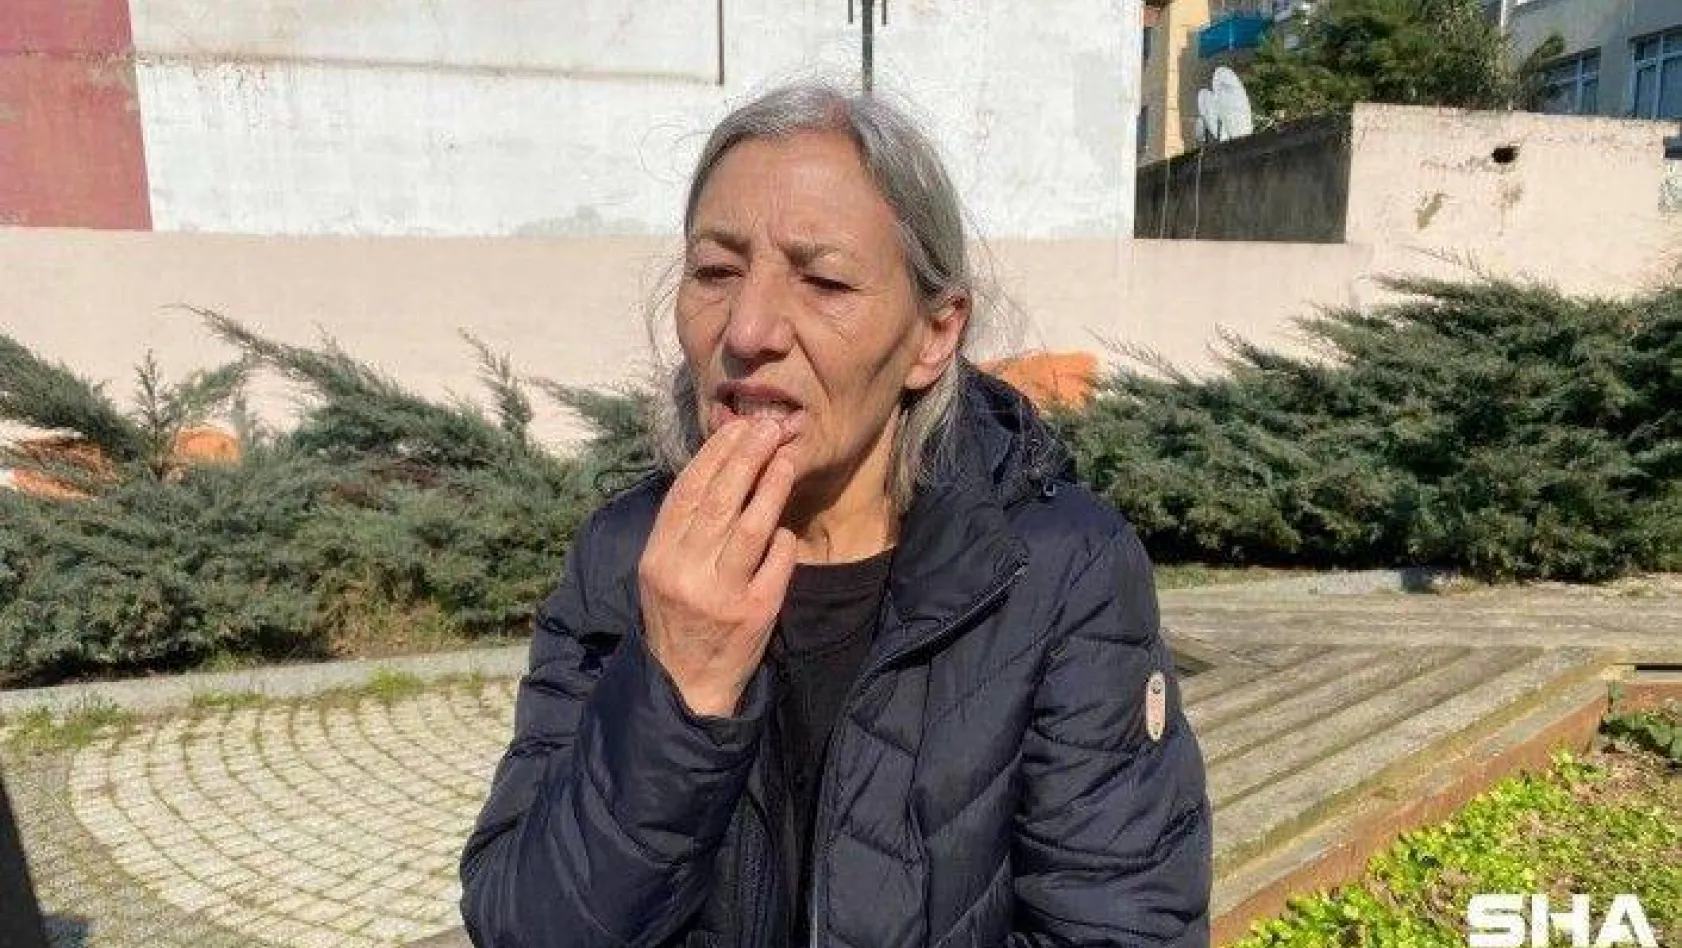 Kadıköy'de gurbetçi kadının 100 bin liralık yanlış diş tedavi iddiası: &quotHem mağduruz hem sağlığımız gitti"